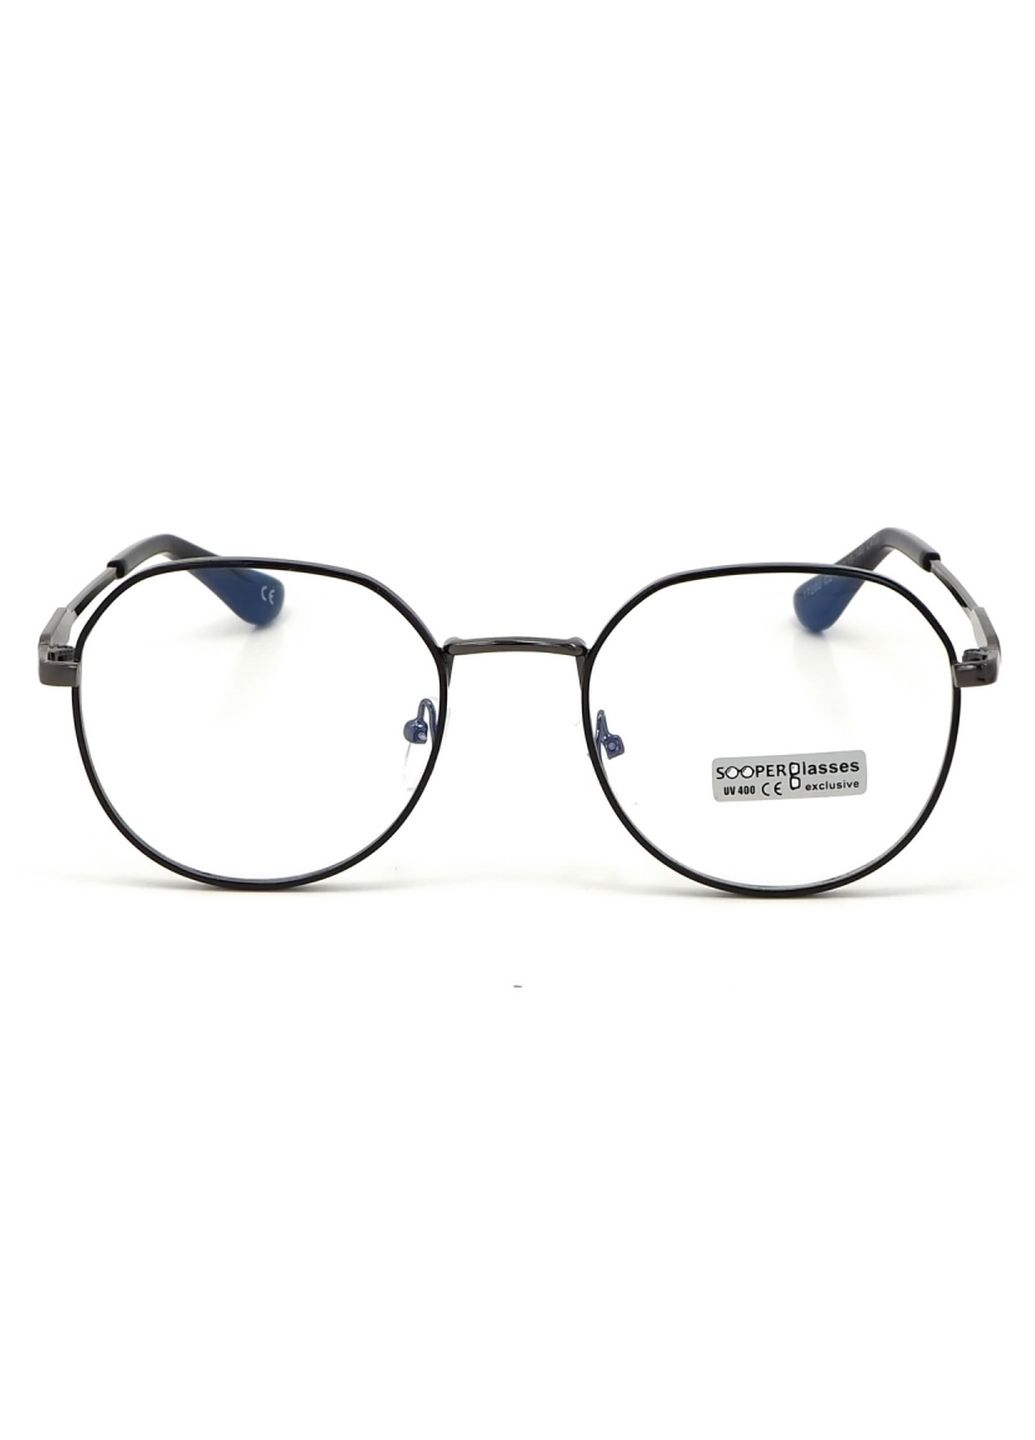 Купить Очки для работы за компьютером Cooper Glasses в серой оправе 124006 в интернет-магазине